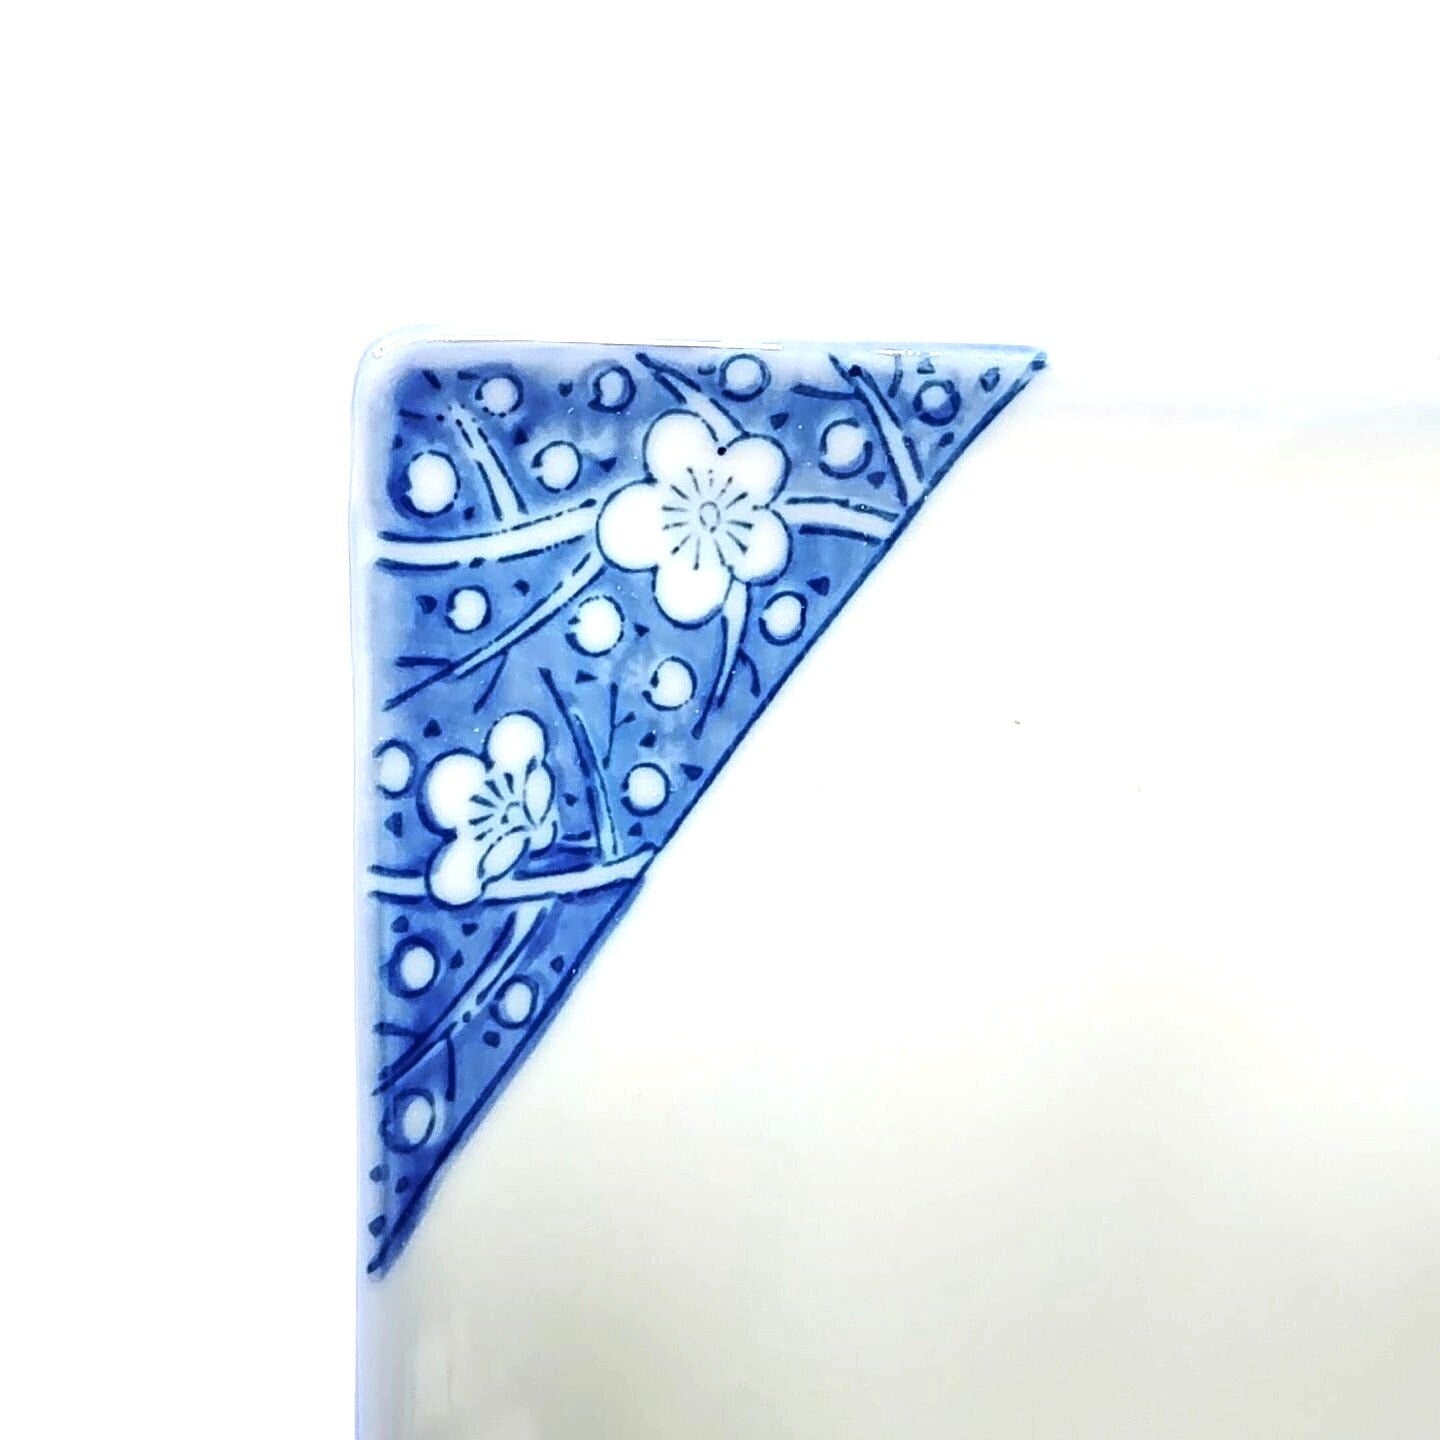 Trinket Serving Tray White Blue Floral Ceramic Chop Mark Vintage 8"